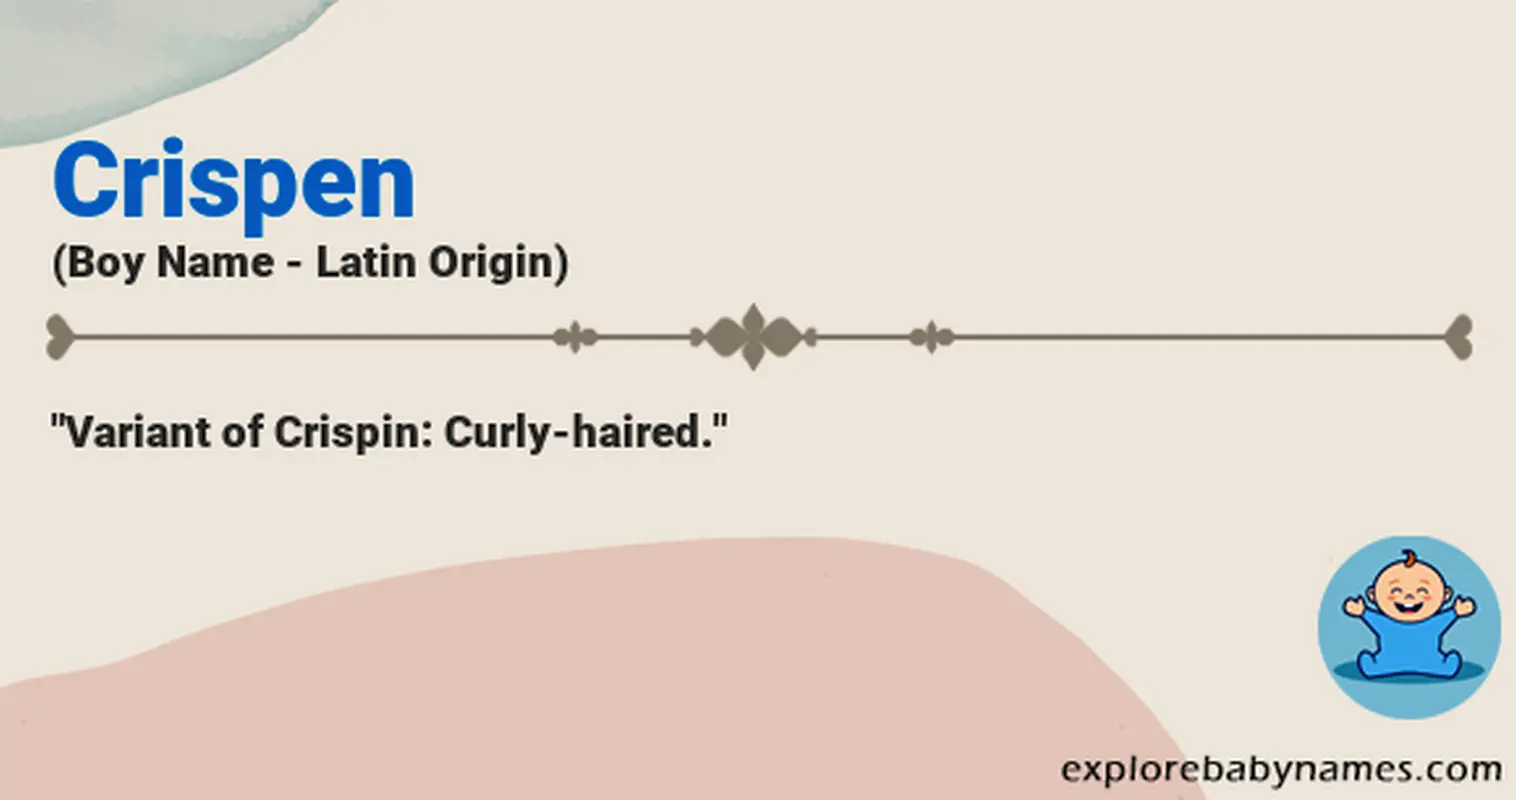 Meaning of Crispen